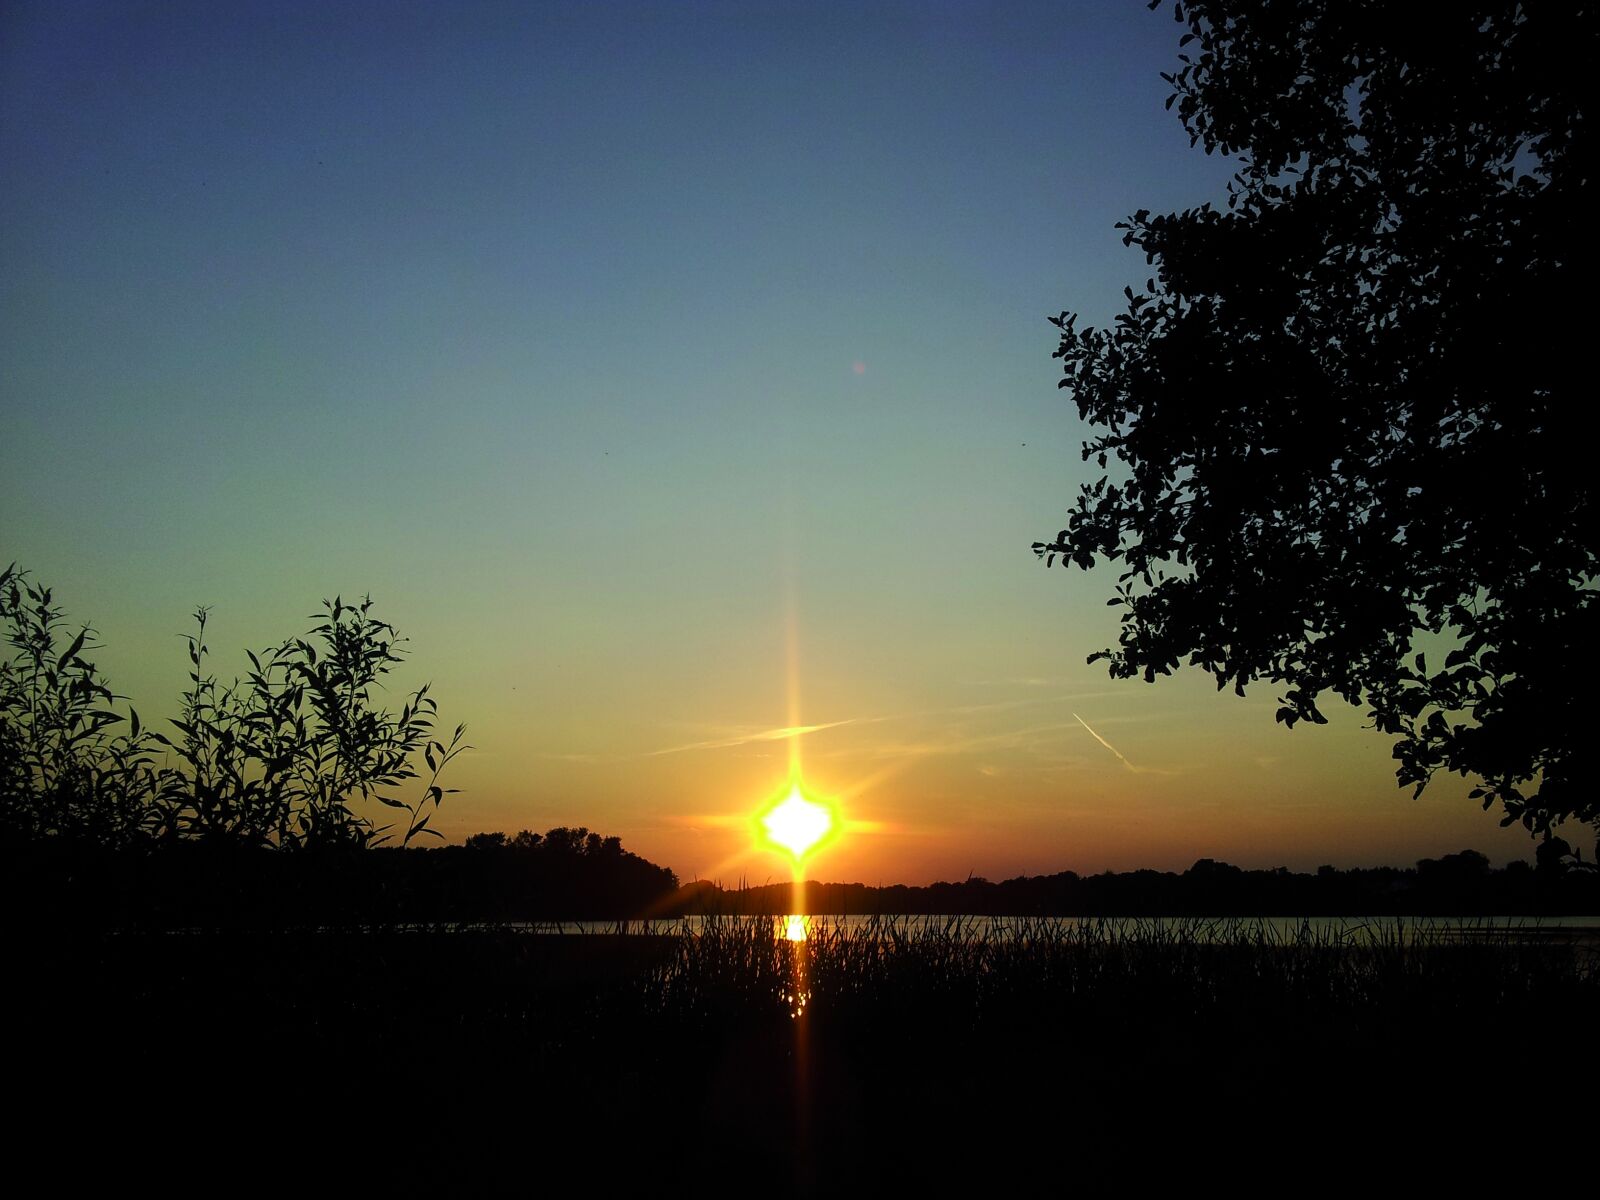 Samsung Galaxy S2 sample photo. Sunset, sun, landscape photography